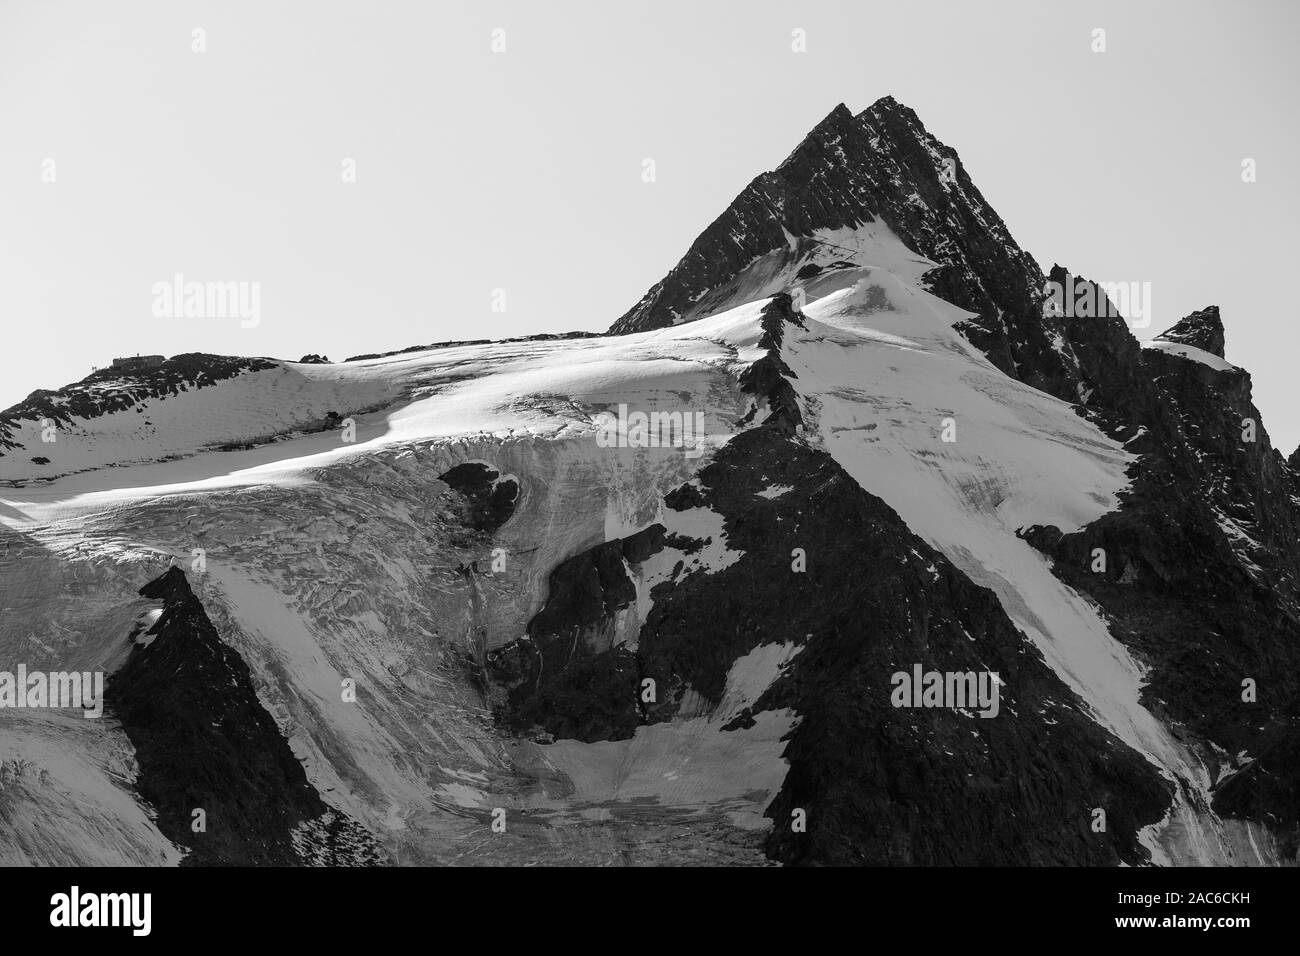 Il Glocknergruppe massiccio alpino; monte Großglockner picco, ghiacciai. Parco Nazionale degli Alti Tauri. Kärnten. Alpi austriache. L'Europa. Foto Stock